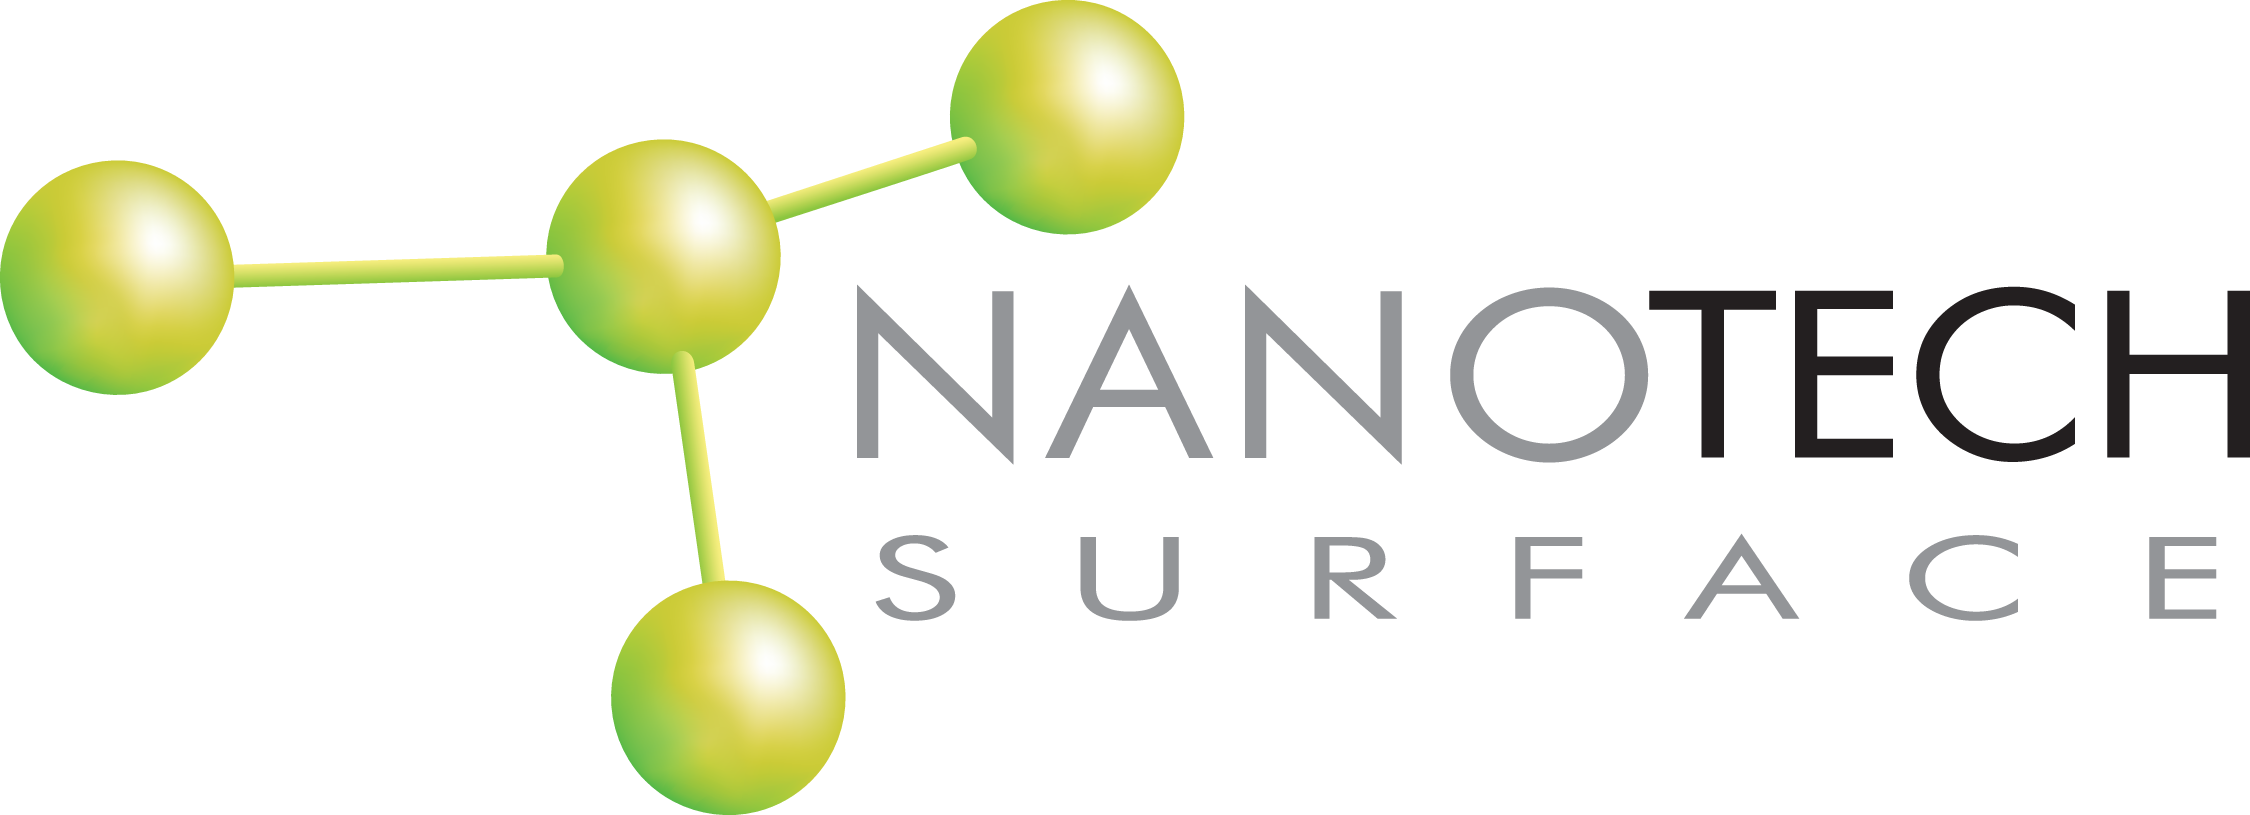 logo_nanotechsurface